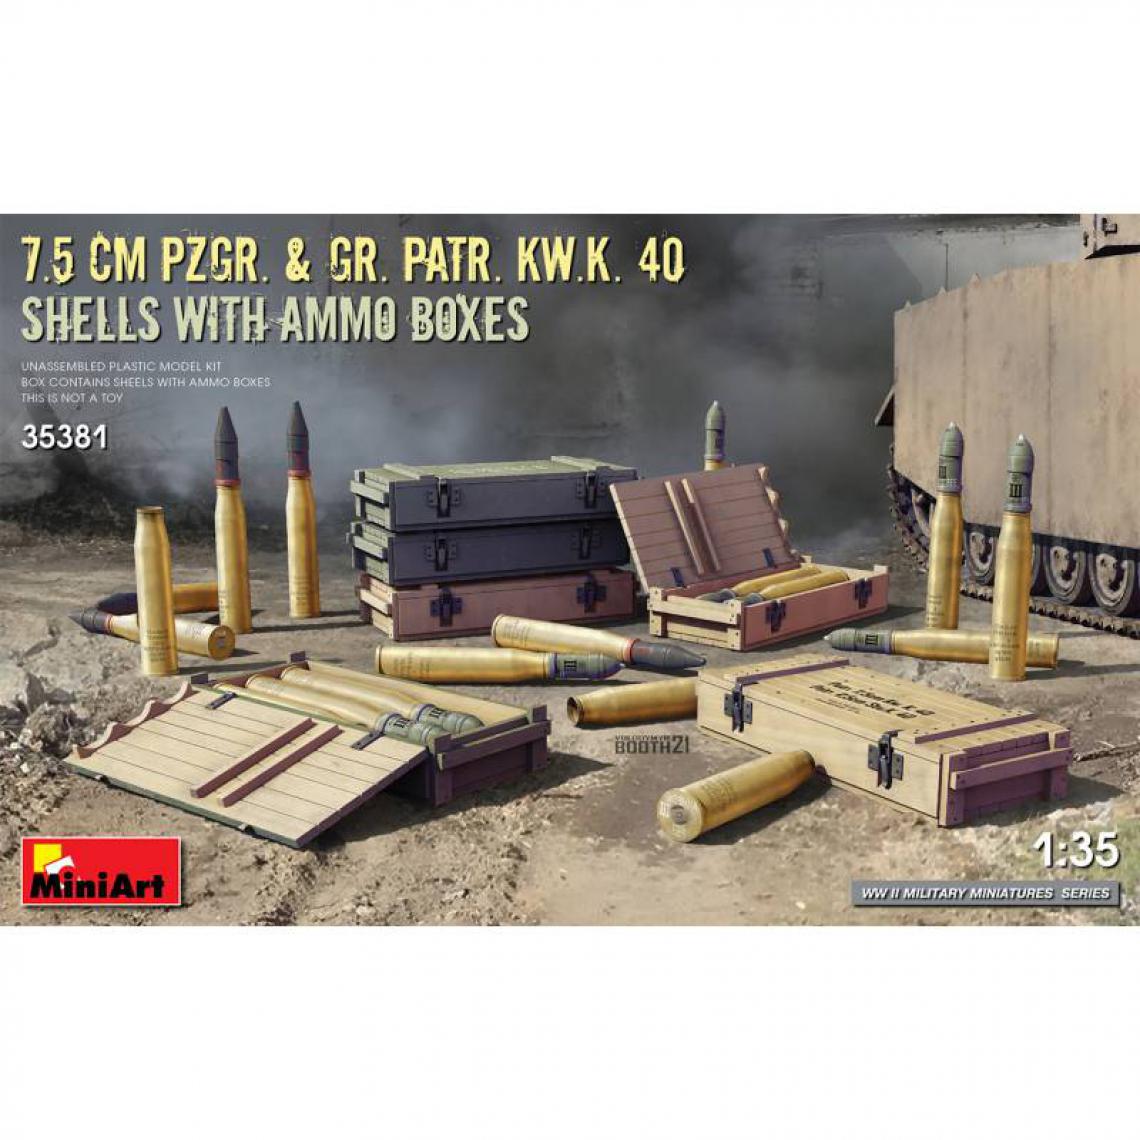 Mini Art - 7.5 Cm Pzgr. & Gr. Patr. Kw.k. 40 Shells With Ammo Boxes - Décor Modélisme - Accessoires maquettes